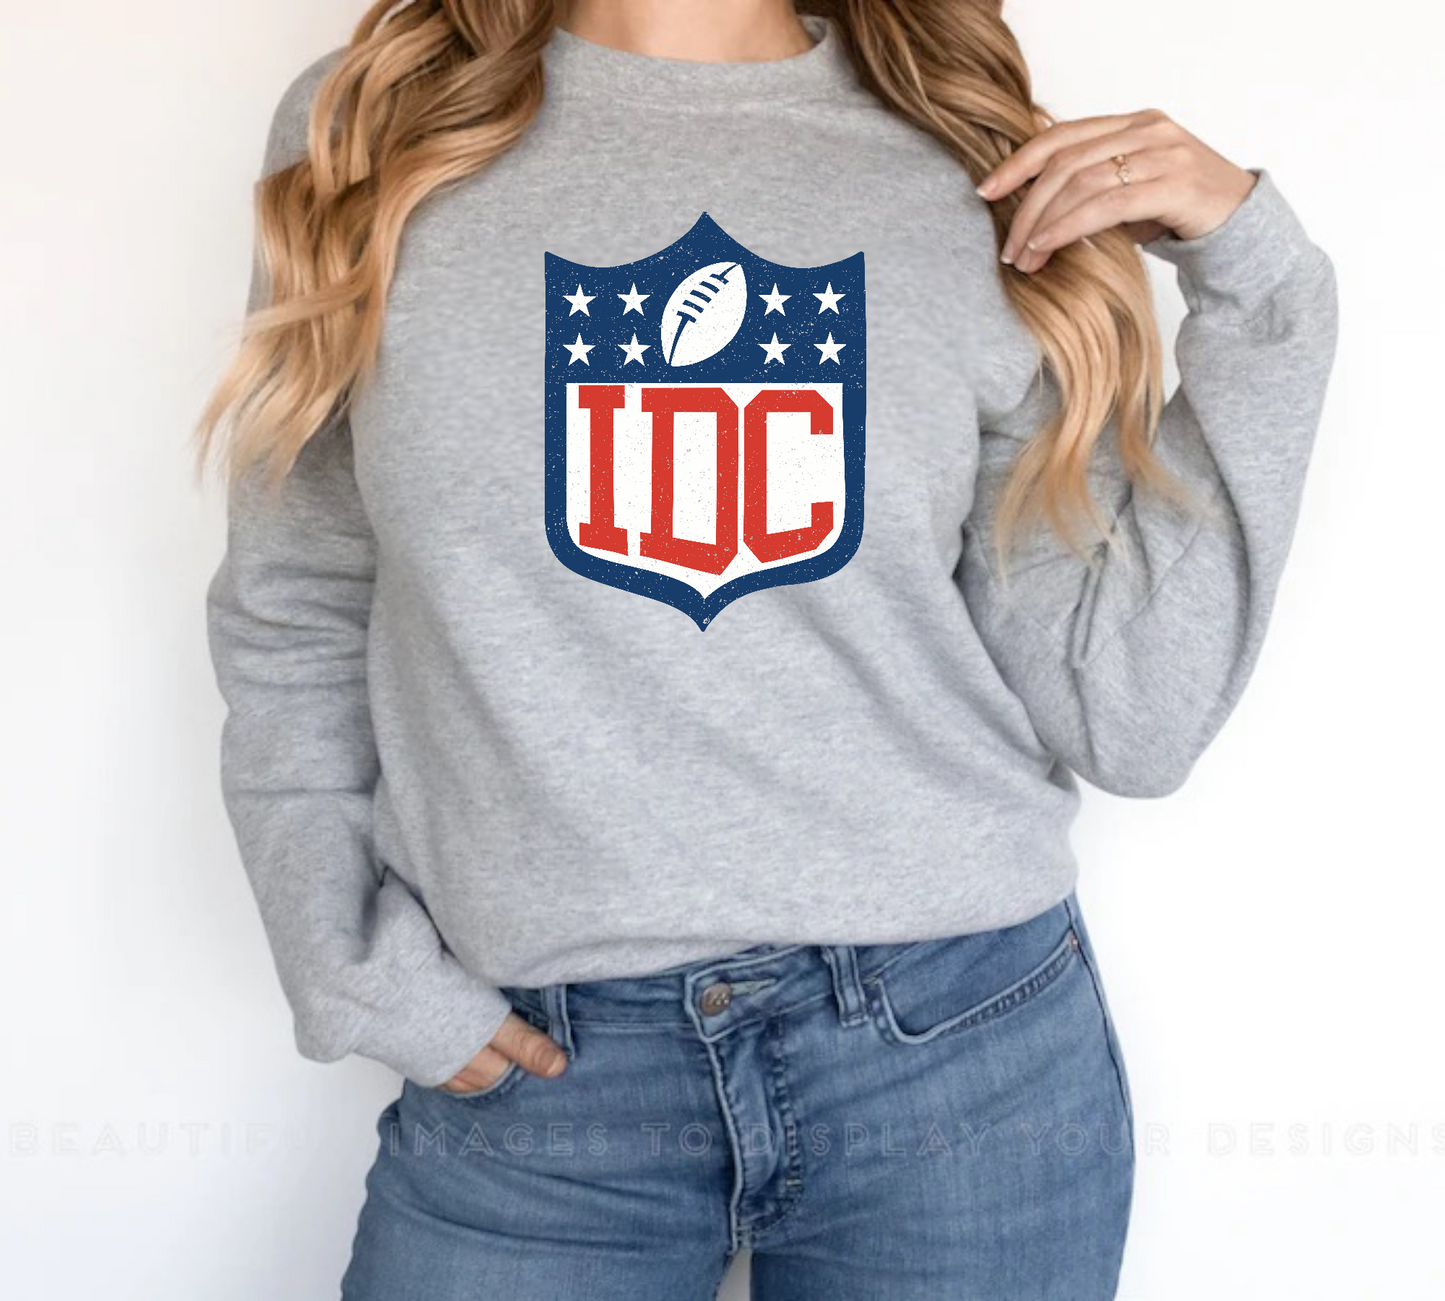 IDC Football Crewneck Sweatshirt or Tee